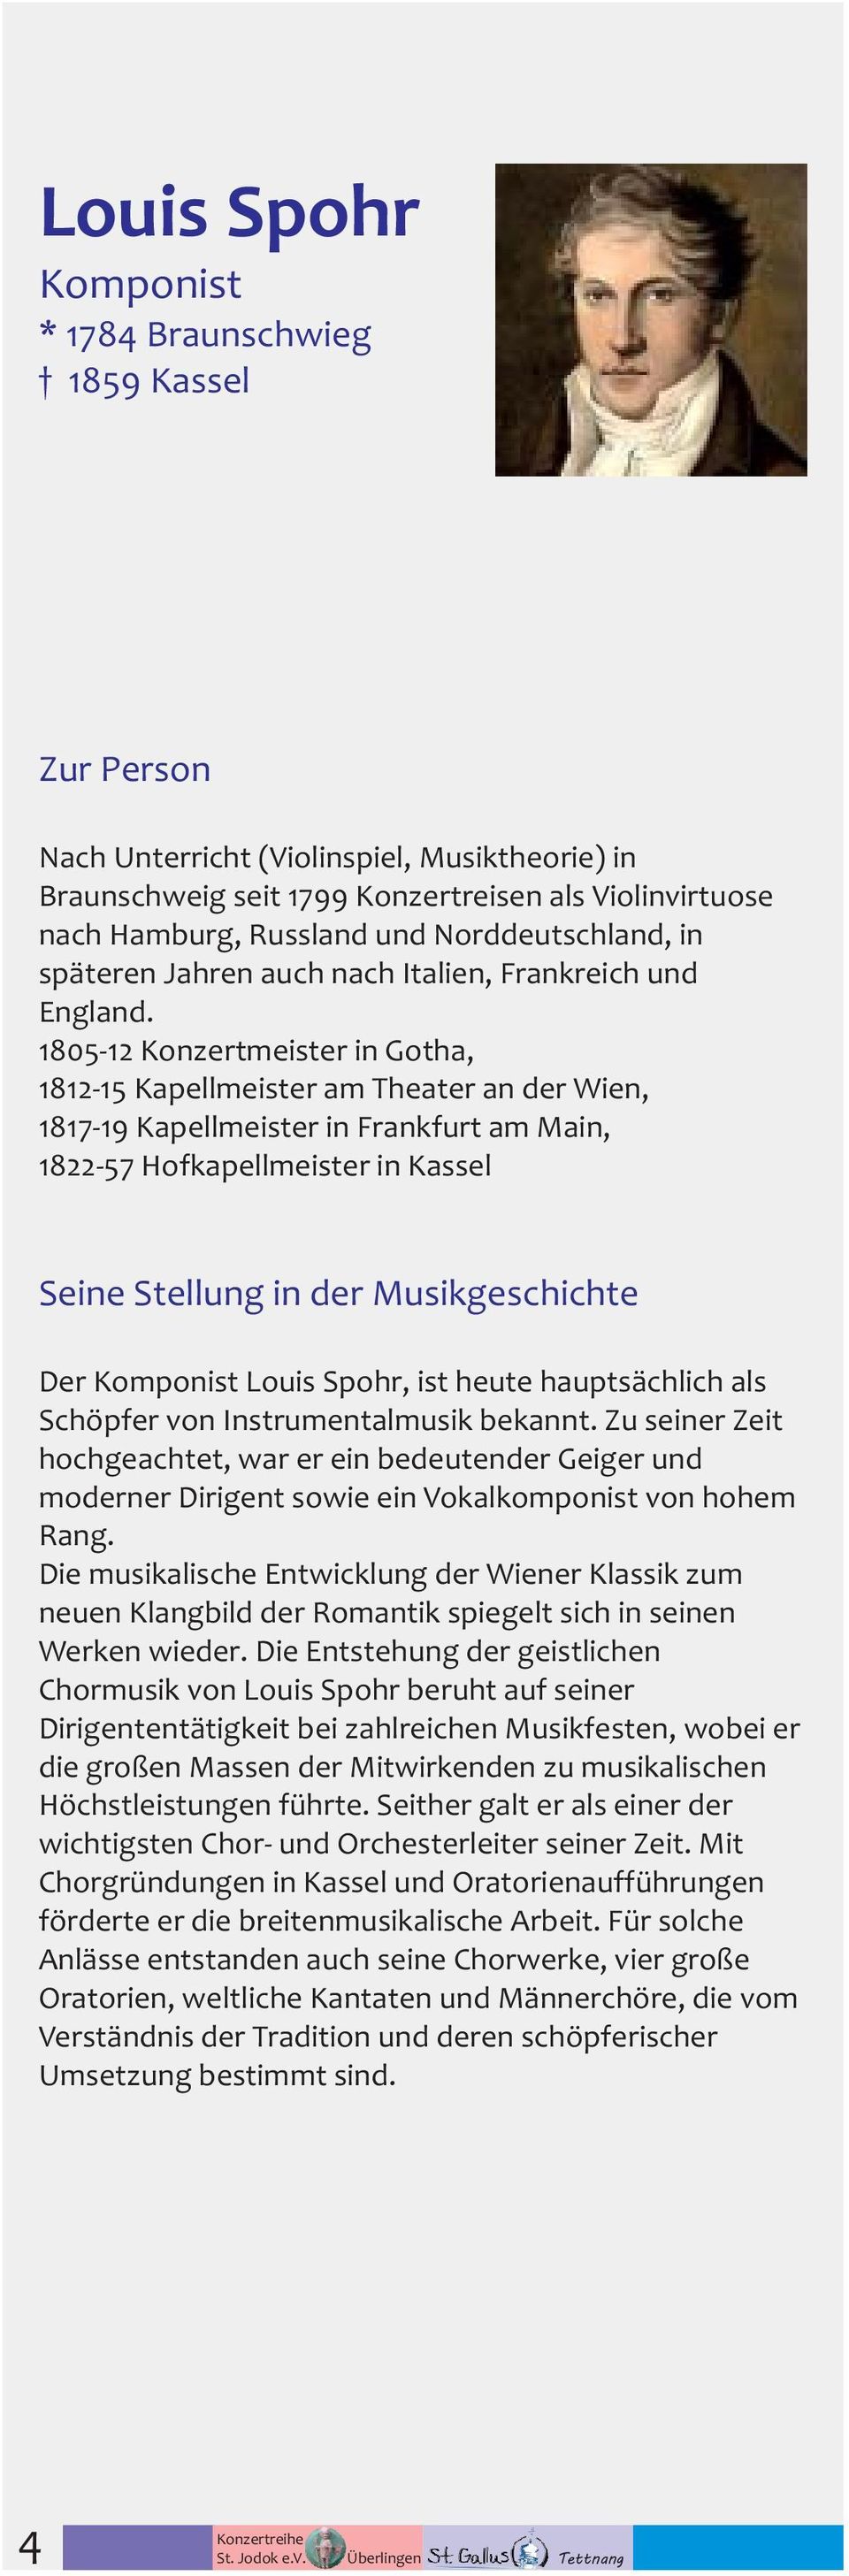 1805-12 Konzertmeister in Gotha, 1812-15 Kapellmeister am Theater an der Wien, 1817-19 Kapellmeister in Frankfurt am Main, 1822-57 Hofkapellmeister in Kassel Seine Stellung in der Musikgeschichte Der